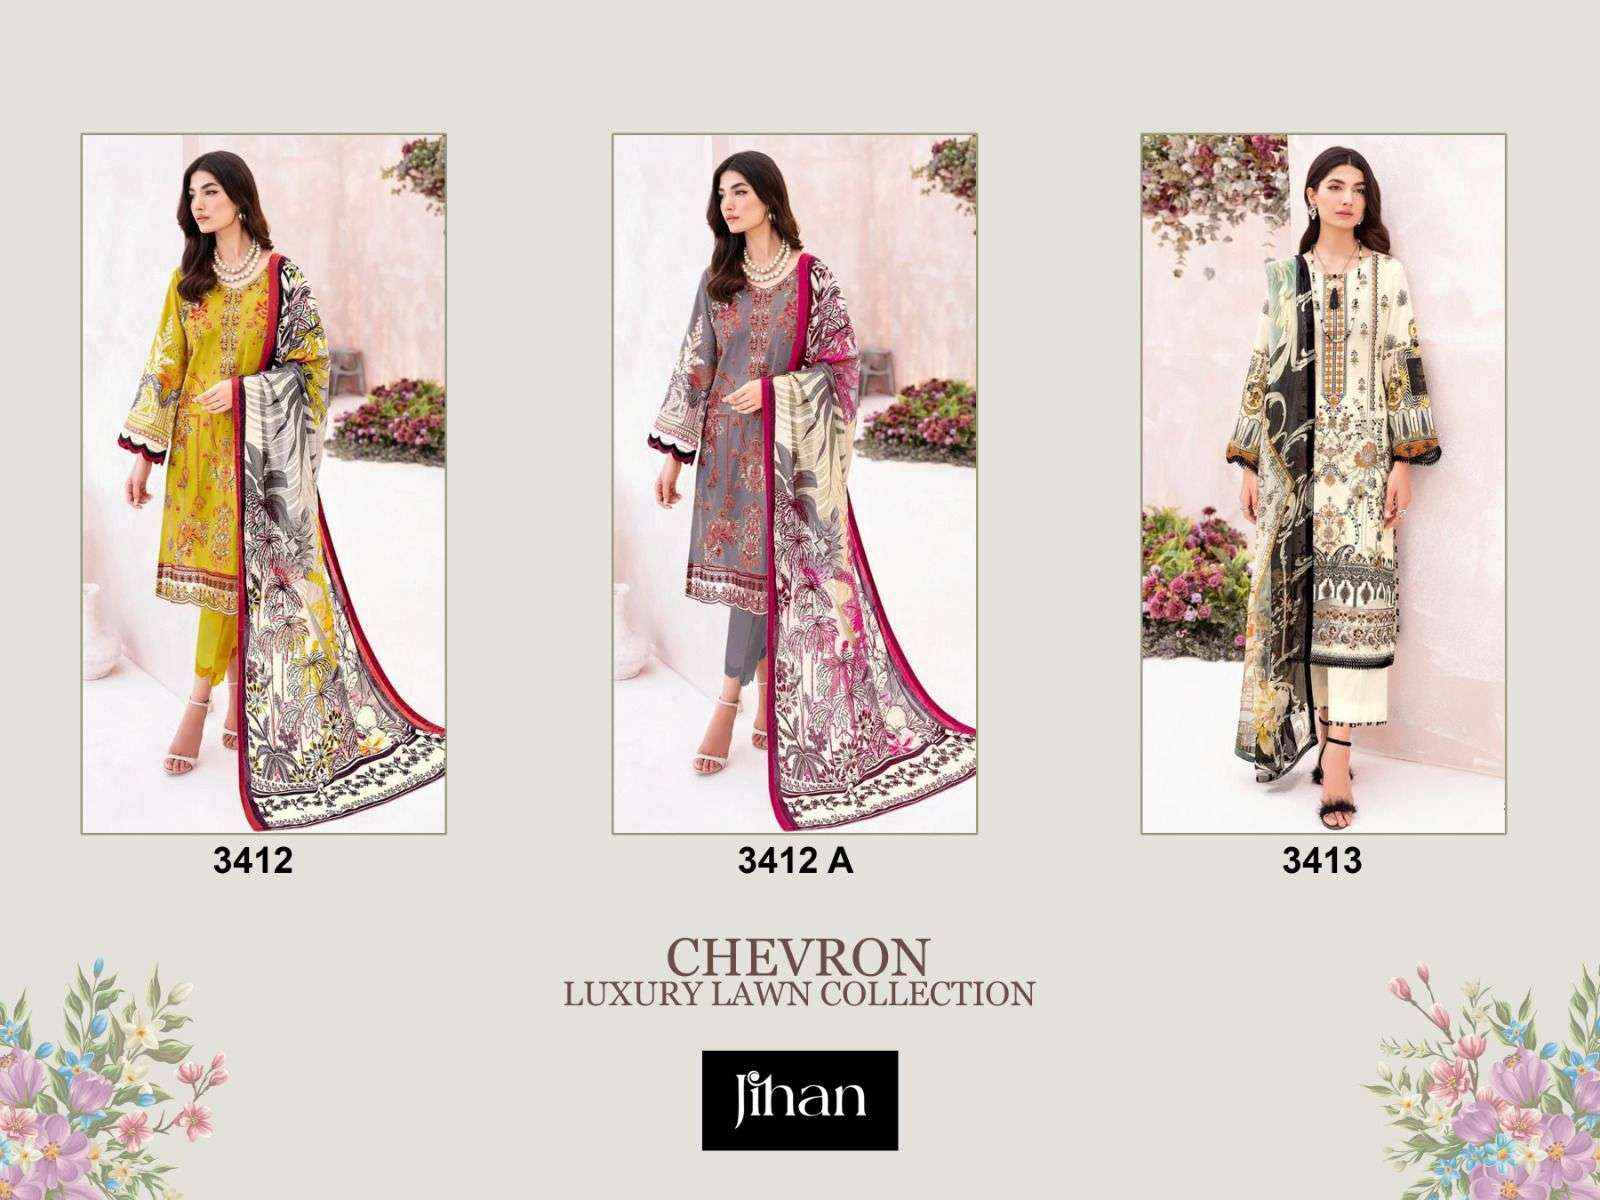 Jihan Chevron Luxury Lawn Collection Vol 2 Lawn Cotton Dress Material 3 pcs Catalogue